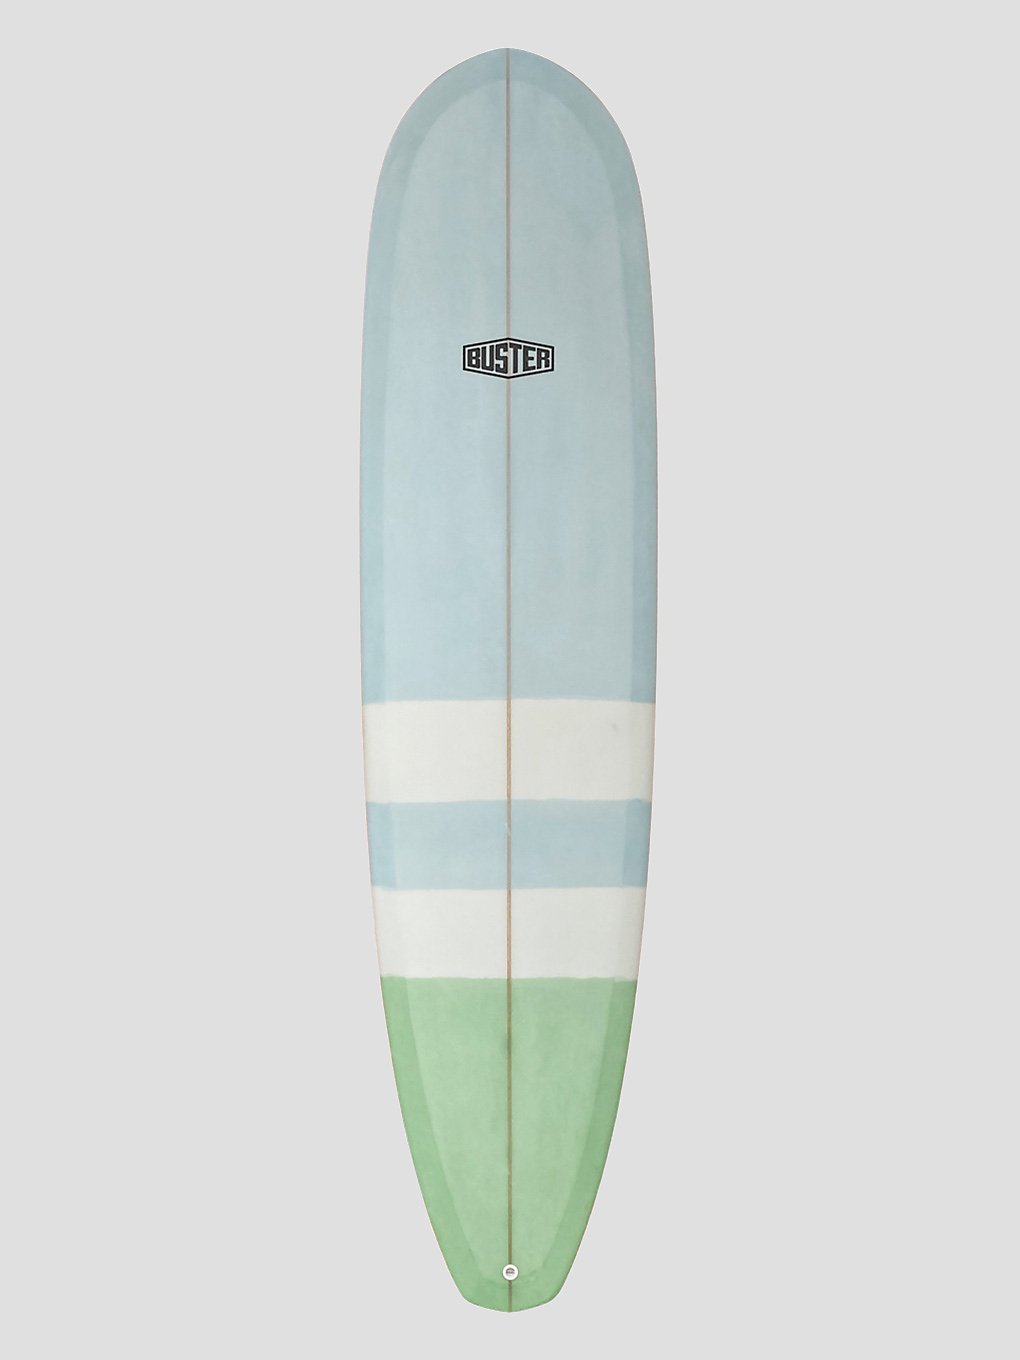 buster 76 minimal surfboard schwarz weiss/blau/schwarz